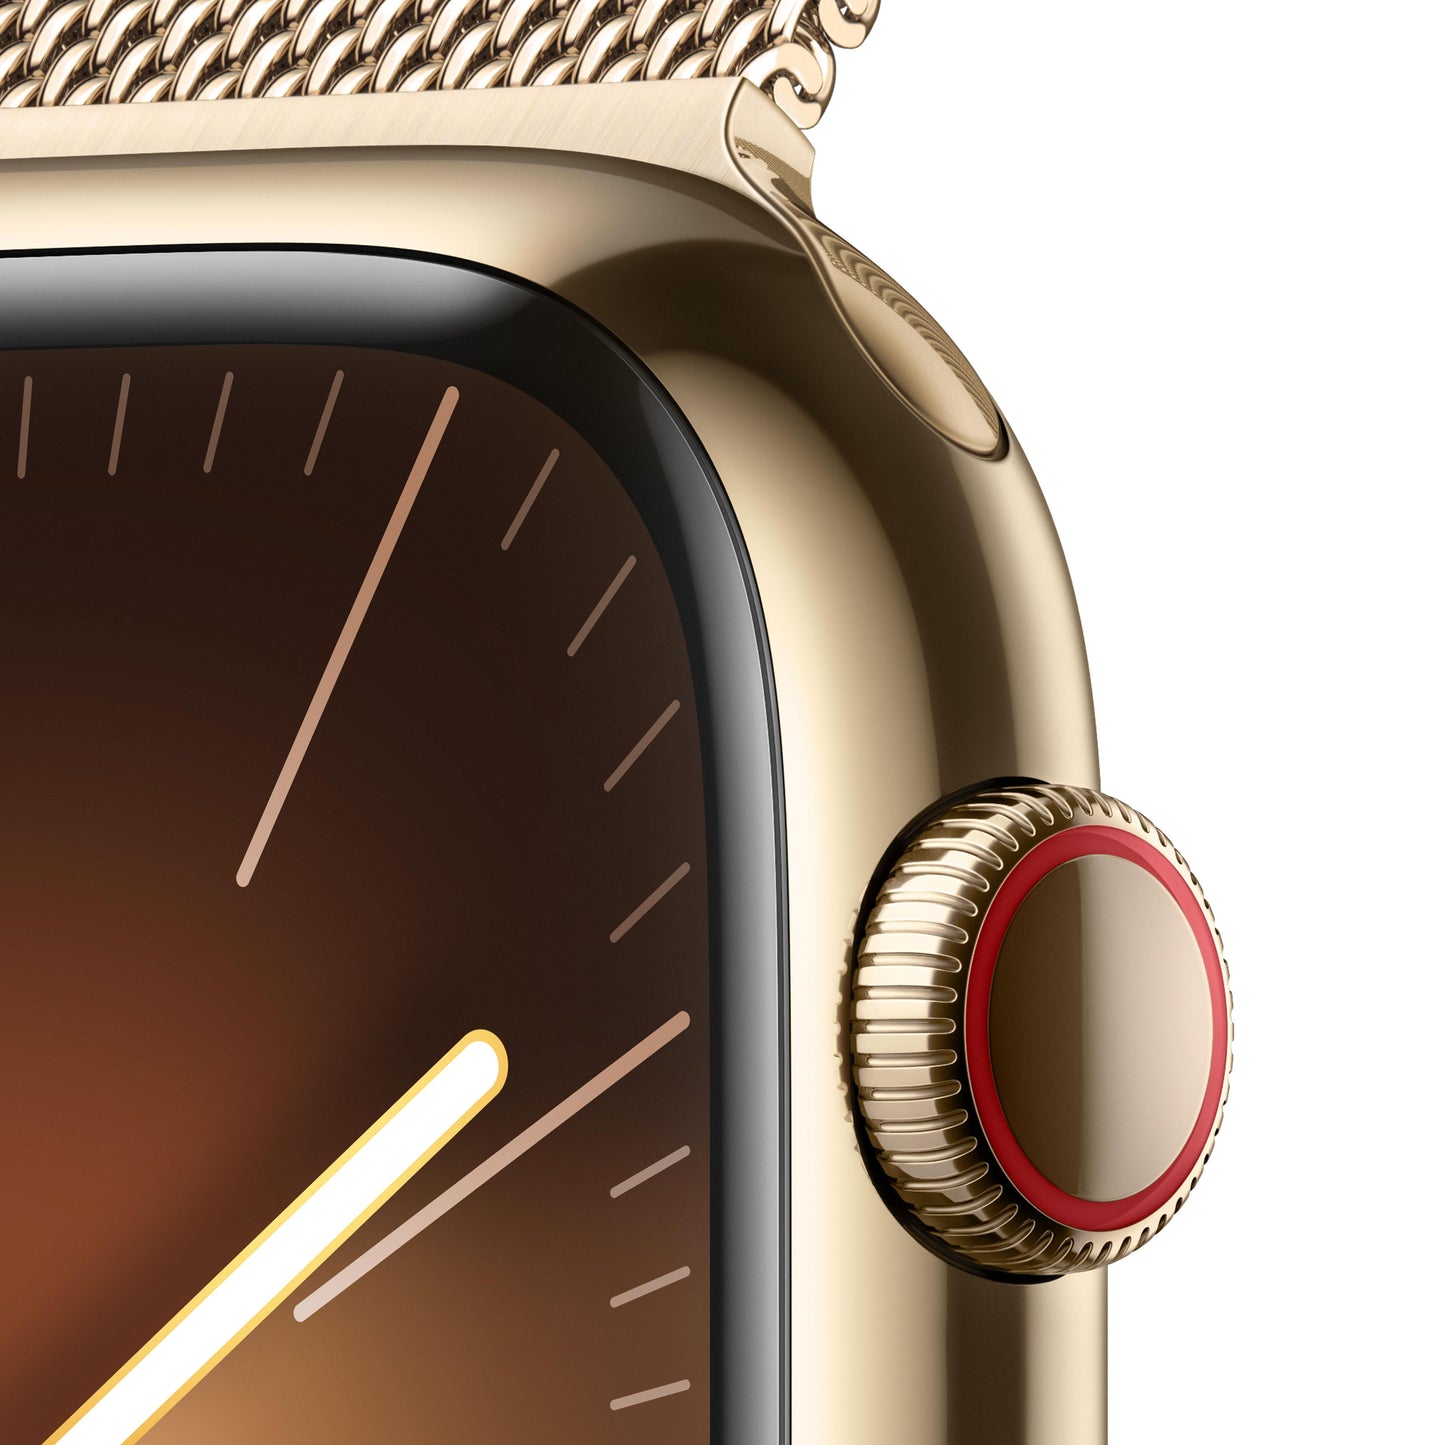 Apple Watch Series 9 (GPS + Cellular) - Caja de acero inoxidable en oro de 45 mm - Pulsera Milanese Loop en oro